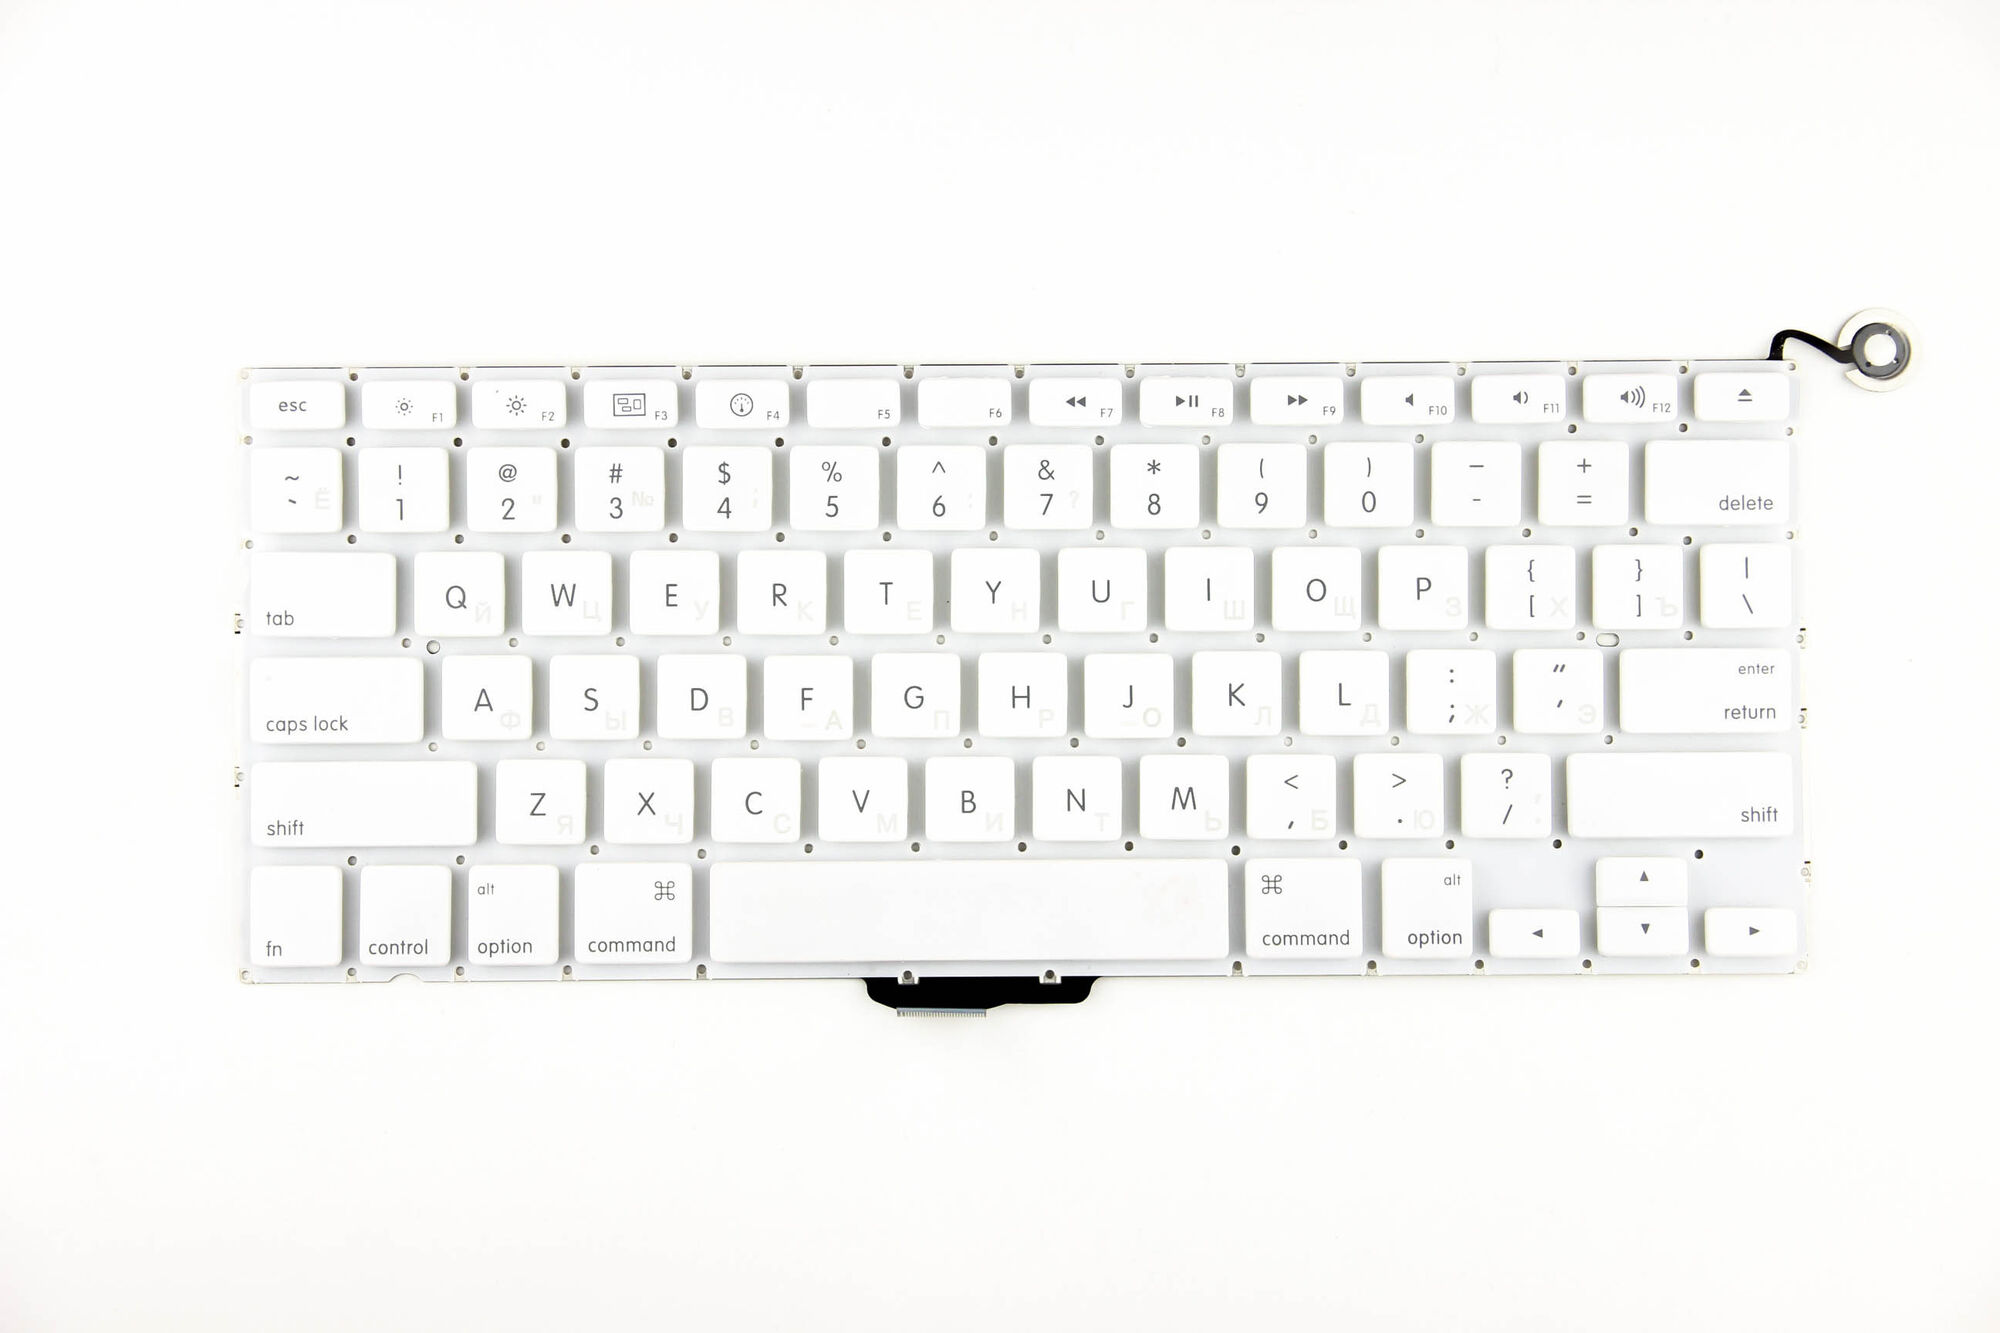 Клавиатура для Apple A1342 белая горизонтальный Enter Ver.2